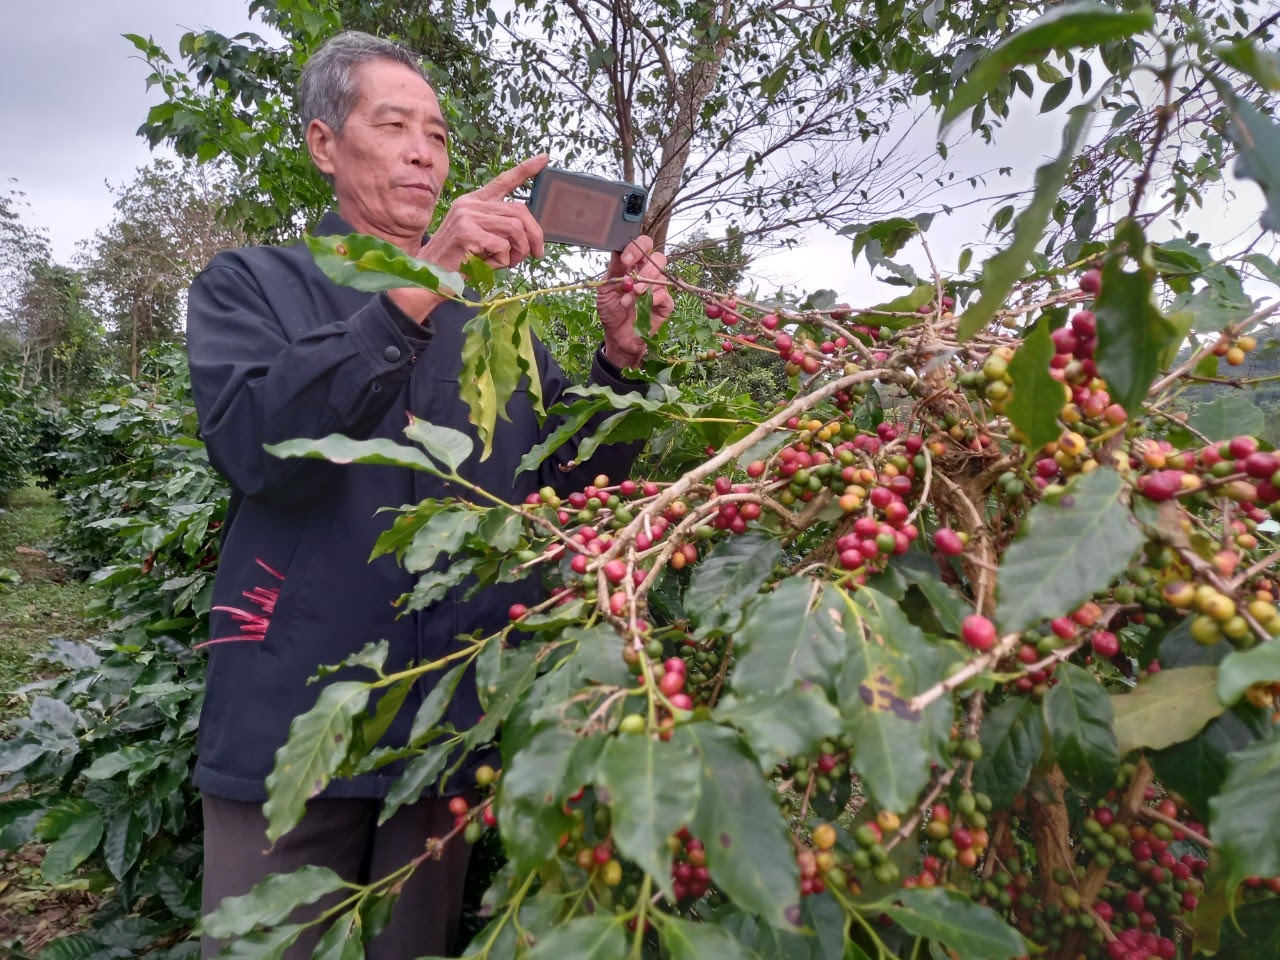 Ông Nguyễn Hữu Minh, thôn Phùng Lâm đã biết sử dụng điện thoại thông minh để chụp, quay lại các sản phẩm nông nghiệp để quảng bá trên facebook - Ảnh: Bảo Nghi